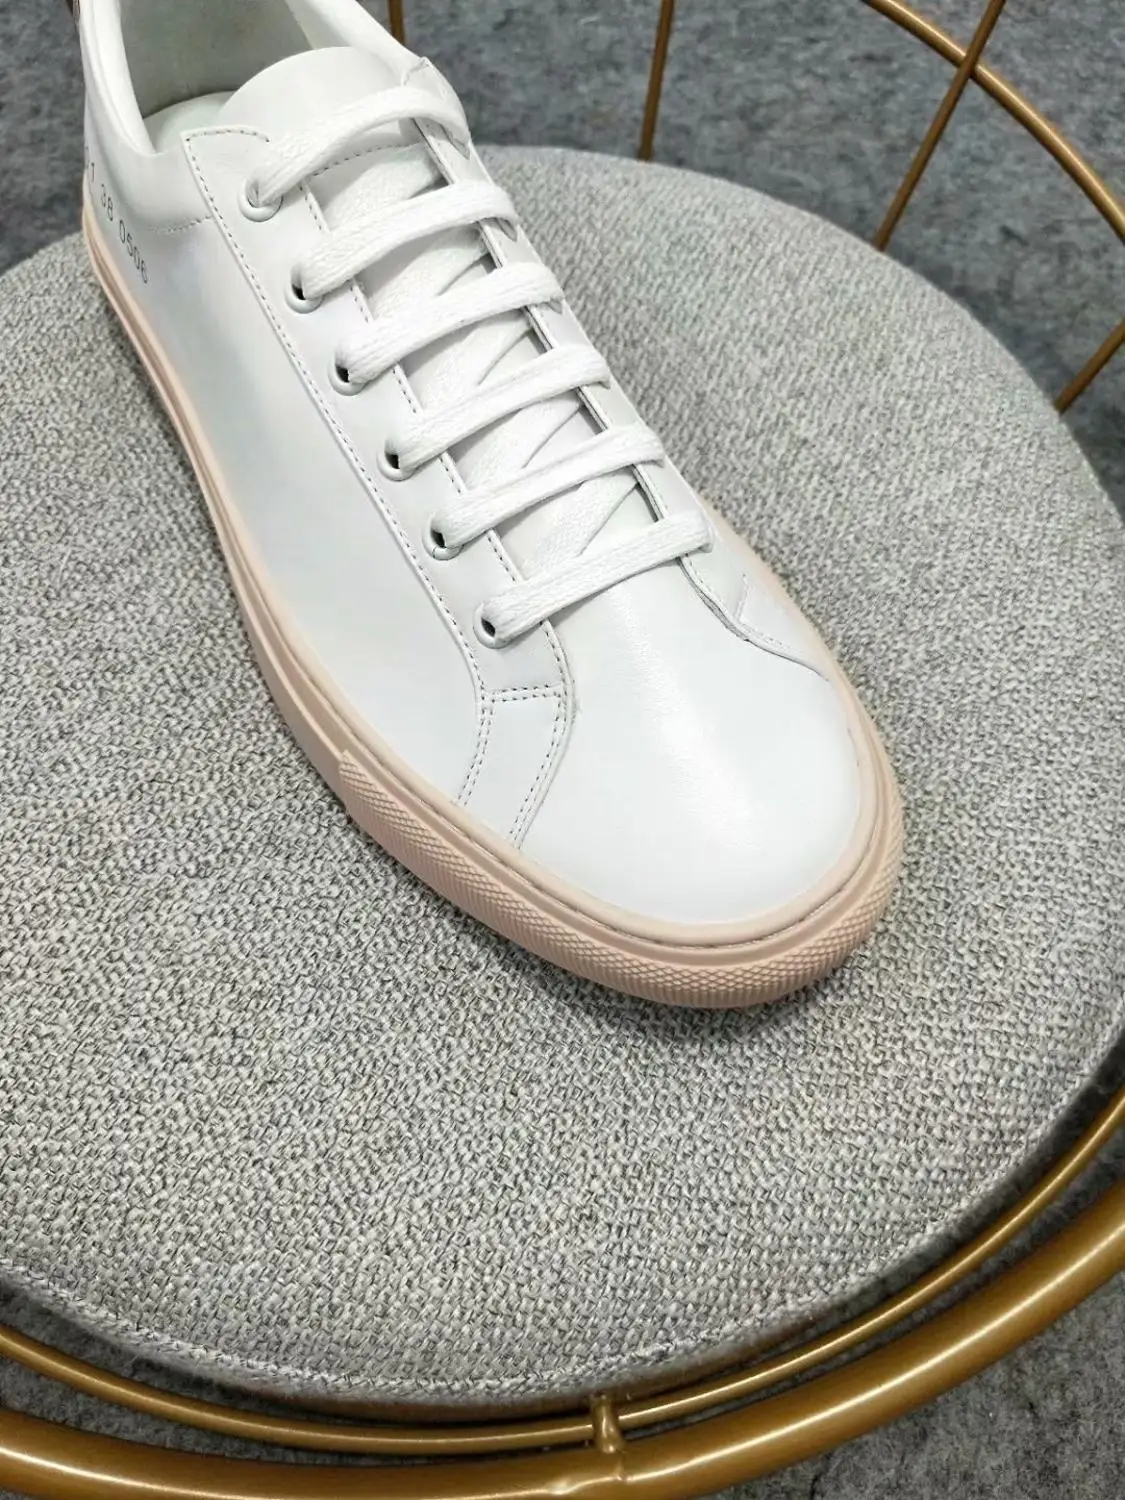 2019 Новые весенние туфли универсальная Корейская версия одного и того же абзаца